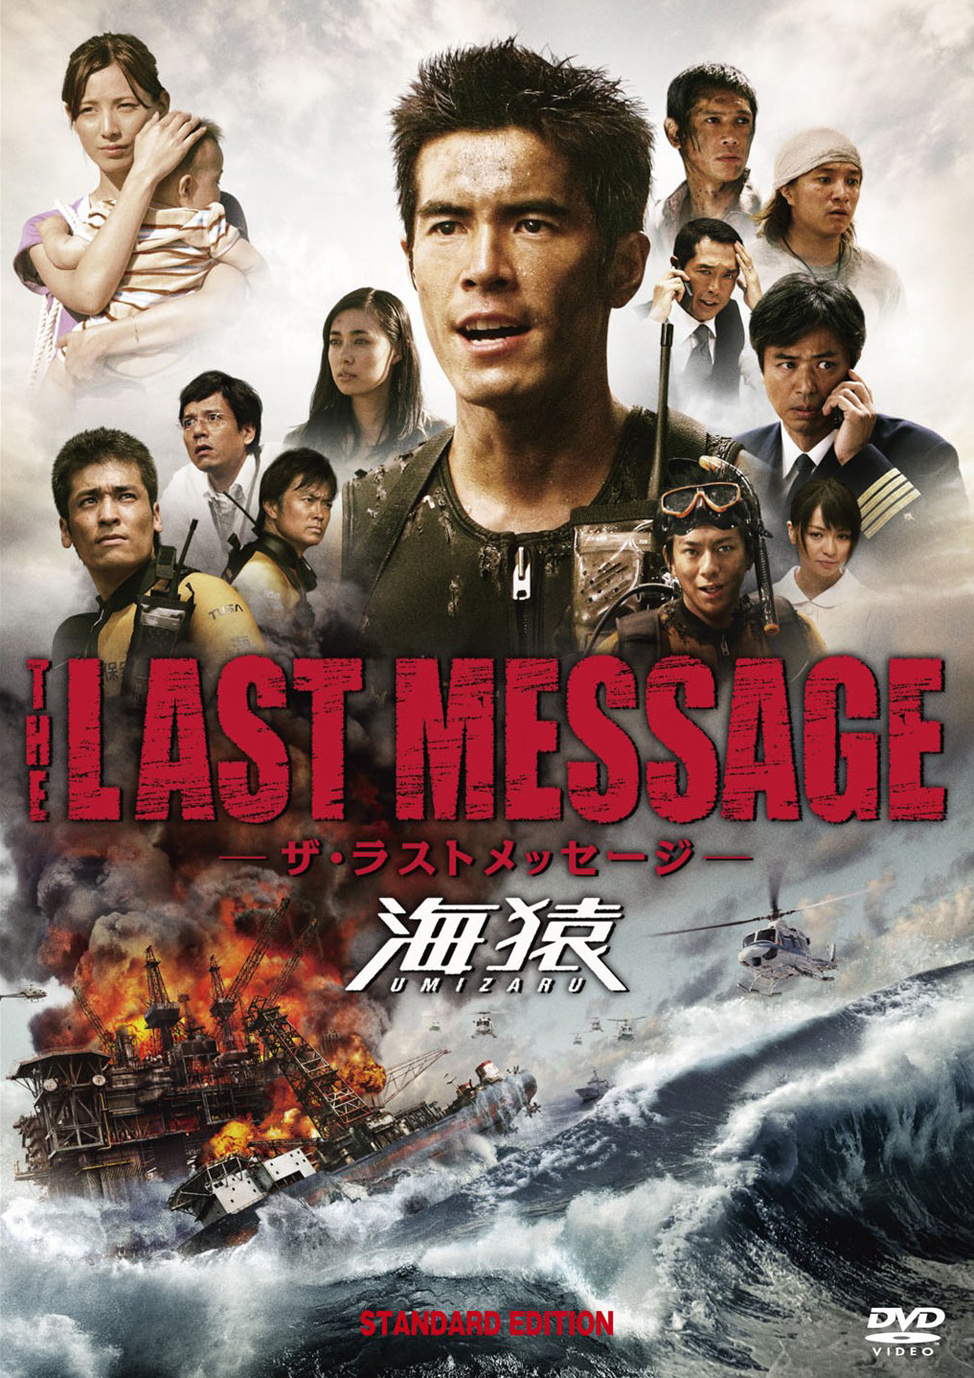 The Last Message 海猿 北九州フィルムコミッション G Motty